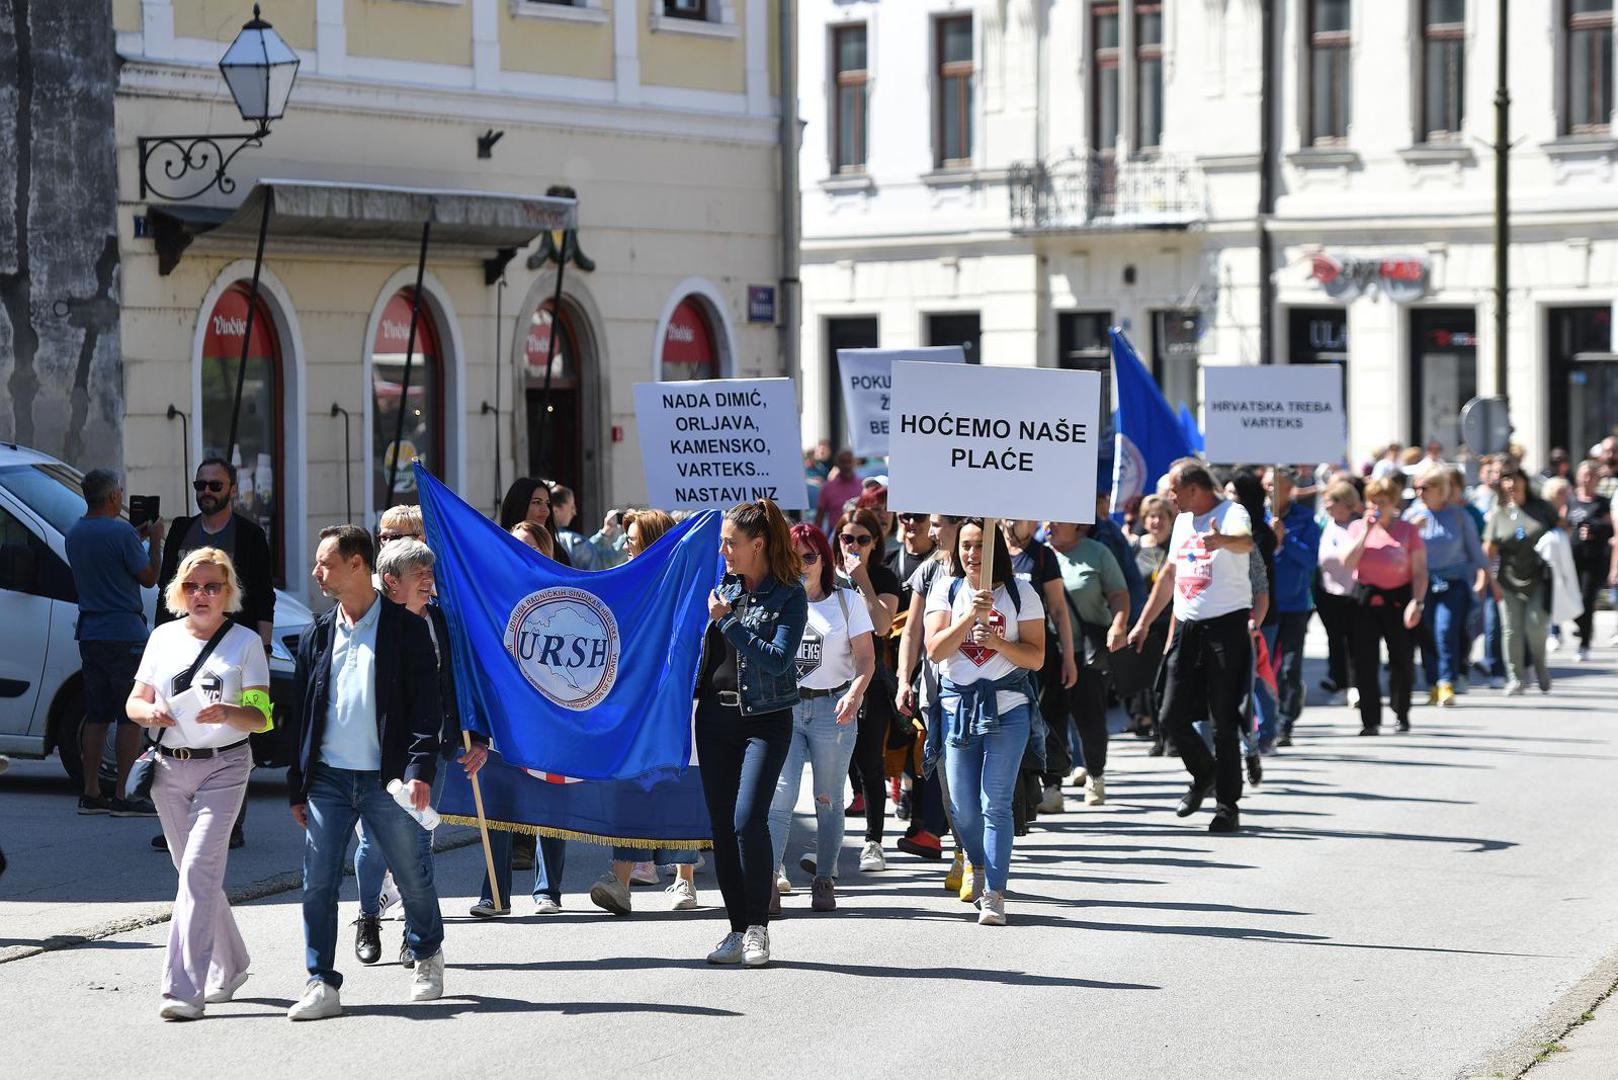 Članica uprave Jelena Bošnjak navodno je radnicima ponudila po 50 eura ako se odbiju pridružiti štrajku.